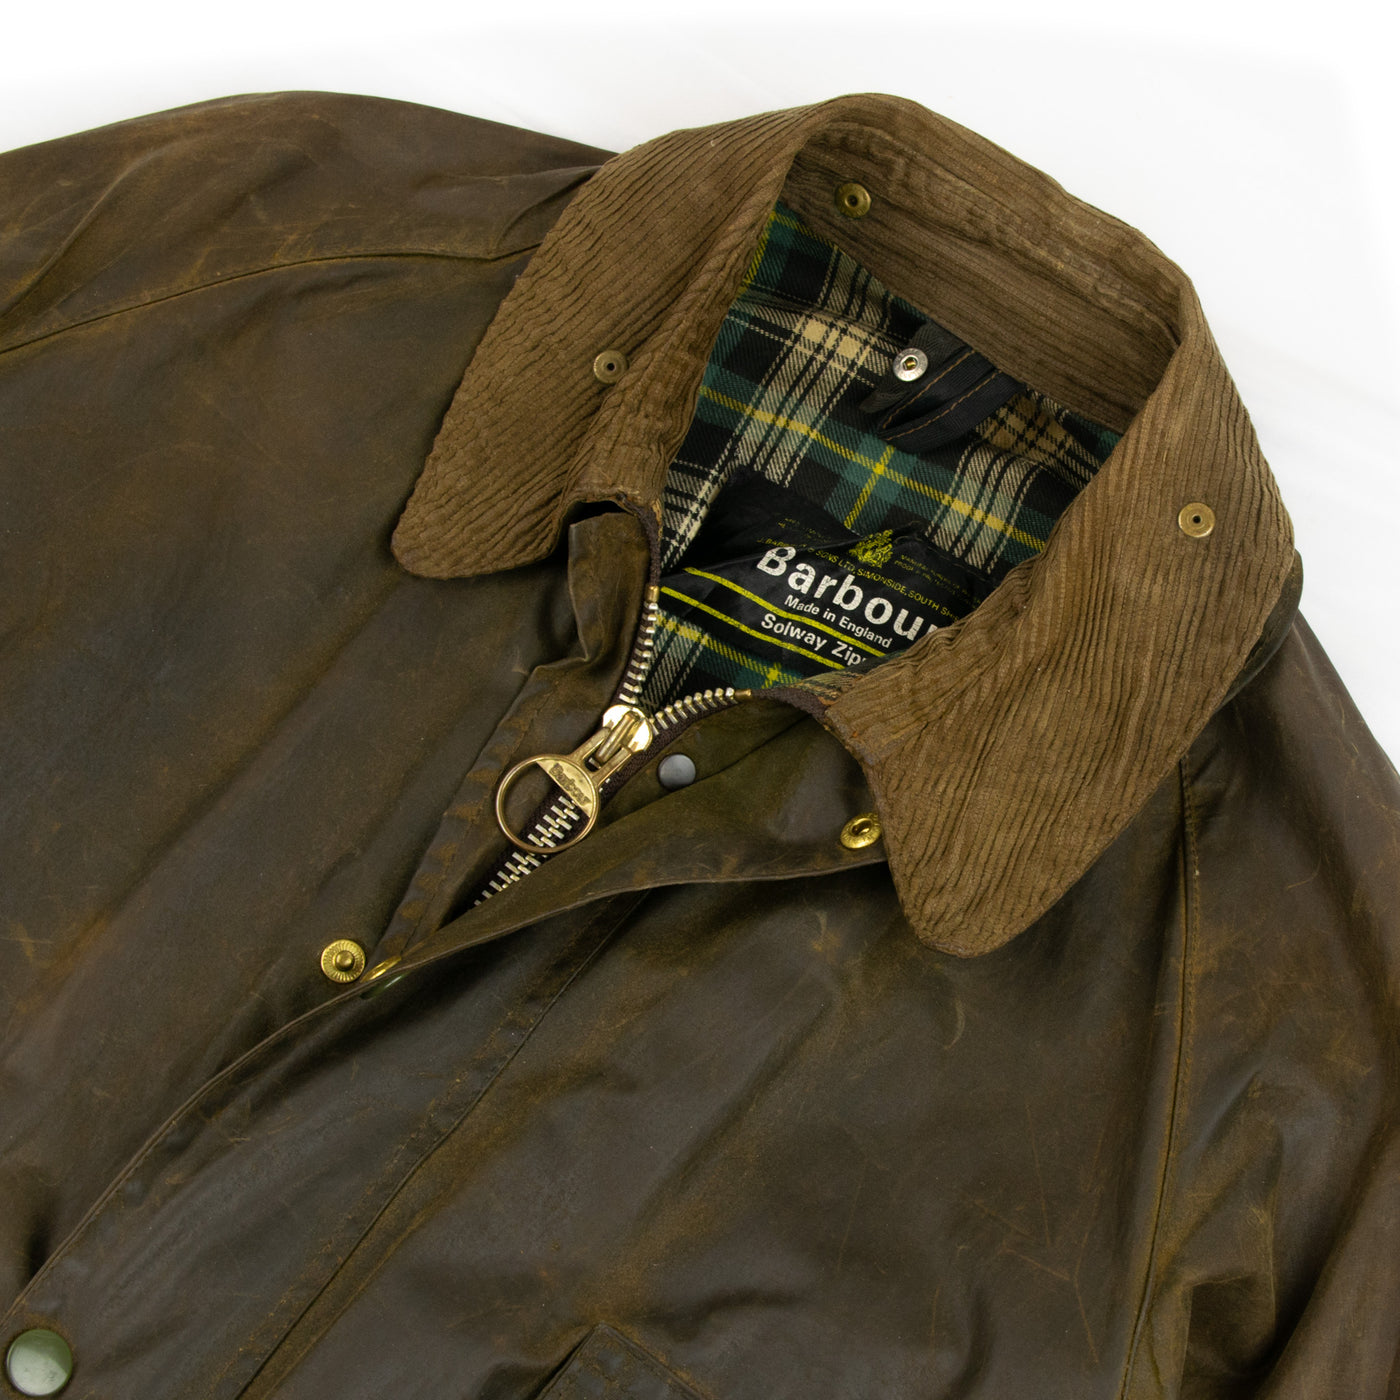 Vintage 1970s Barbour 1 Crest Solway Zipper Brown Wax Jacket Coat Made In England - L